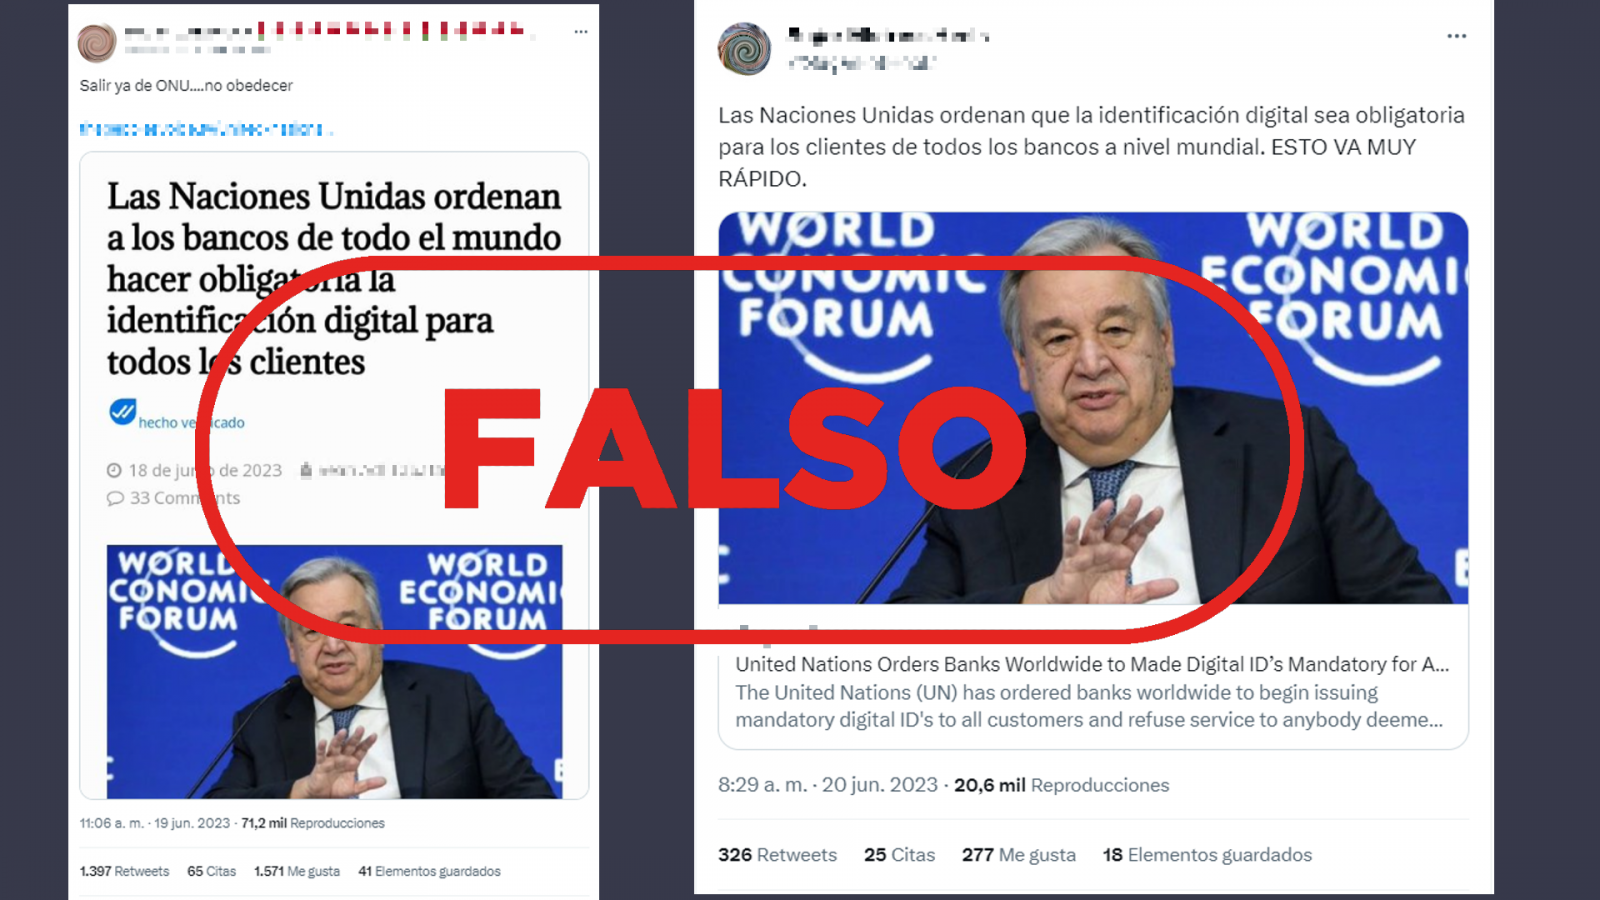 Mensajes de Twitter que difunden la falsa idea de que la ONU obliga a los bancos a identificar digitalmente a sus clientes, con el sello falso en rojo de VerificaRTVE